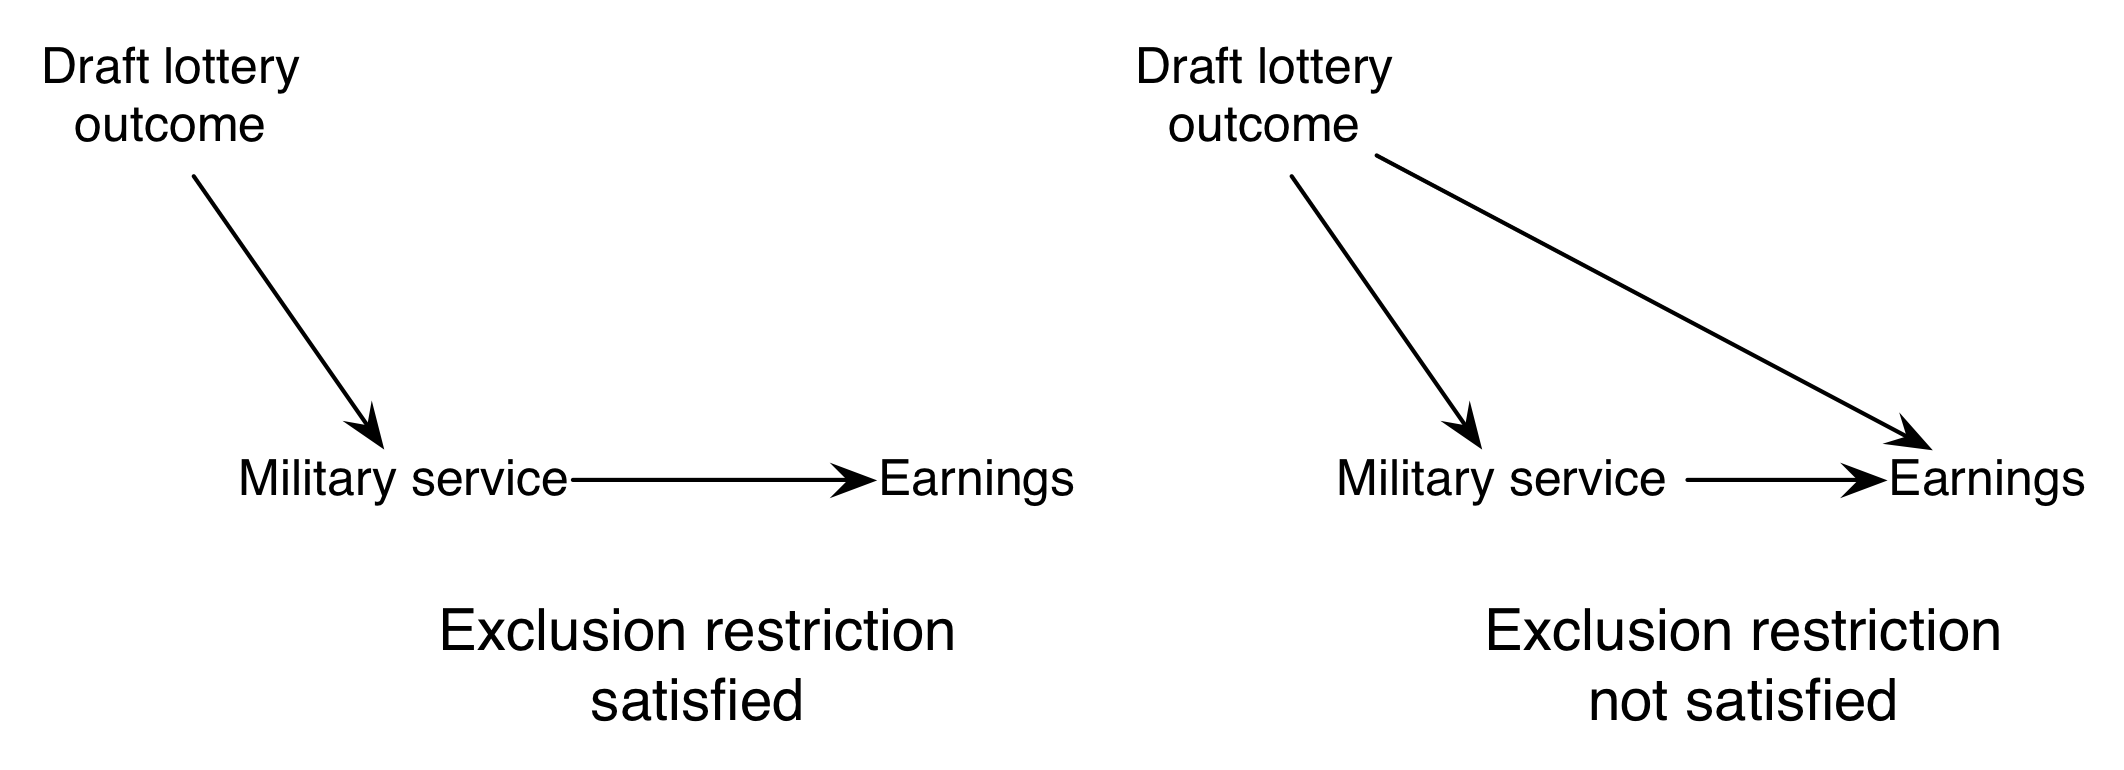 Σχήμα 2.11: Ο περιορισμός αποκλεισμού απαιτεί η ενθάρρυνση (draft lottery) να επηρεάσει το αποτέλεσμα (κέρδη) μόνο μέσω της θεραπείας (στρατιωτική υπηρεσία). Ο περιορισμός αποκλεισμού θα μπορούσε να παραβιαστεί εάν, για παράδειγμα, οι συνταξιούχοι διανύσουν περισσότερο χρόνο στο σχολείο για να αποφύγουν την υπηρεσία και ότι αυτός ο αυξημένος χρόνος στο σχολείο οδήγησε σε υψηλότερα κέρδη.